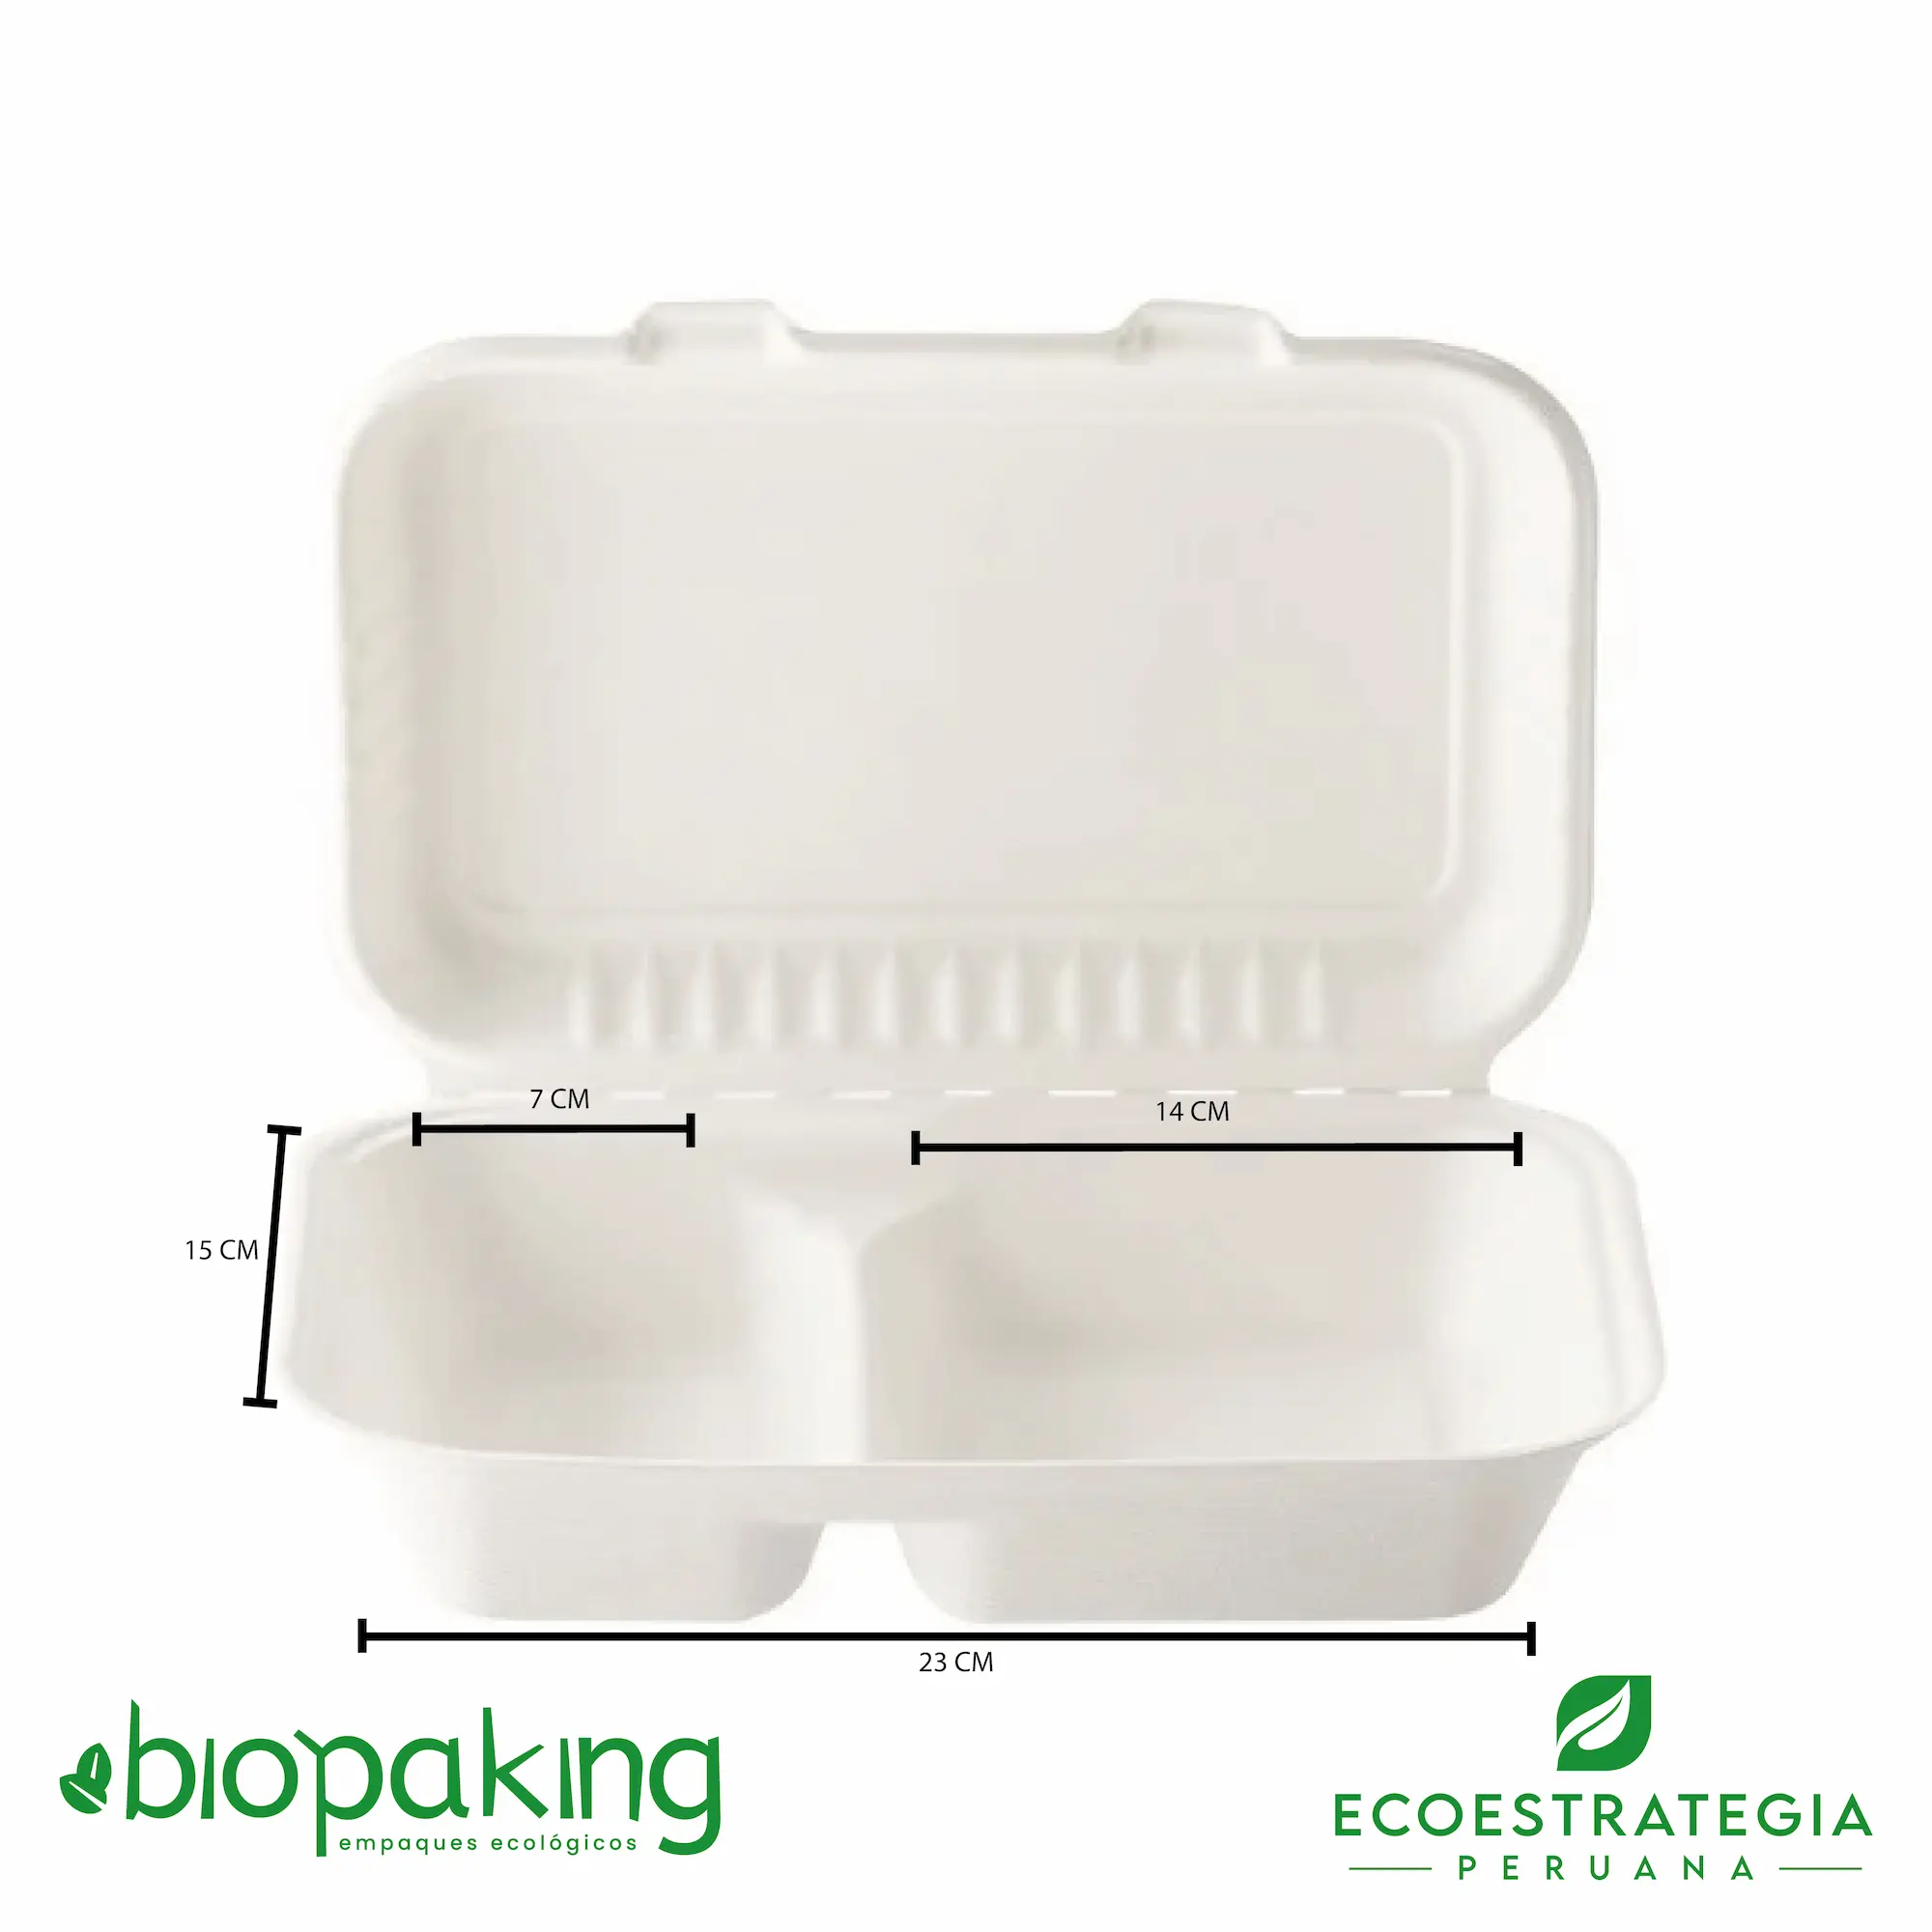 Este envase biodegradable CT5 tiene una capacidad de 900ml. Taper biodegradable a base del bagazo de fibra de caña de azúcar, empaques de gramaje ideal para comidas frías y calientes